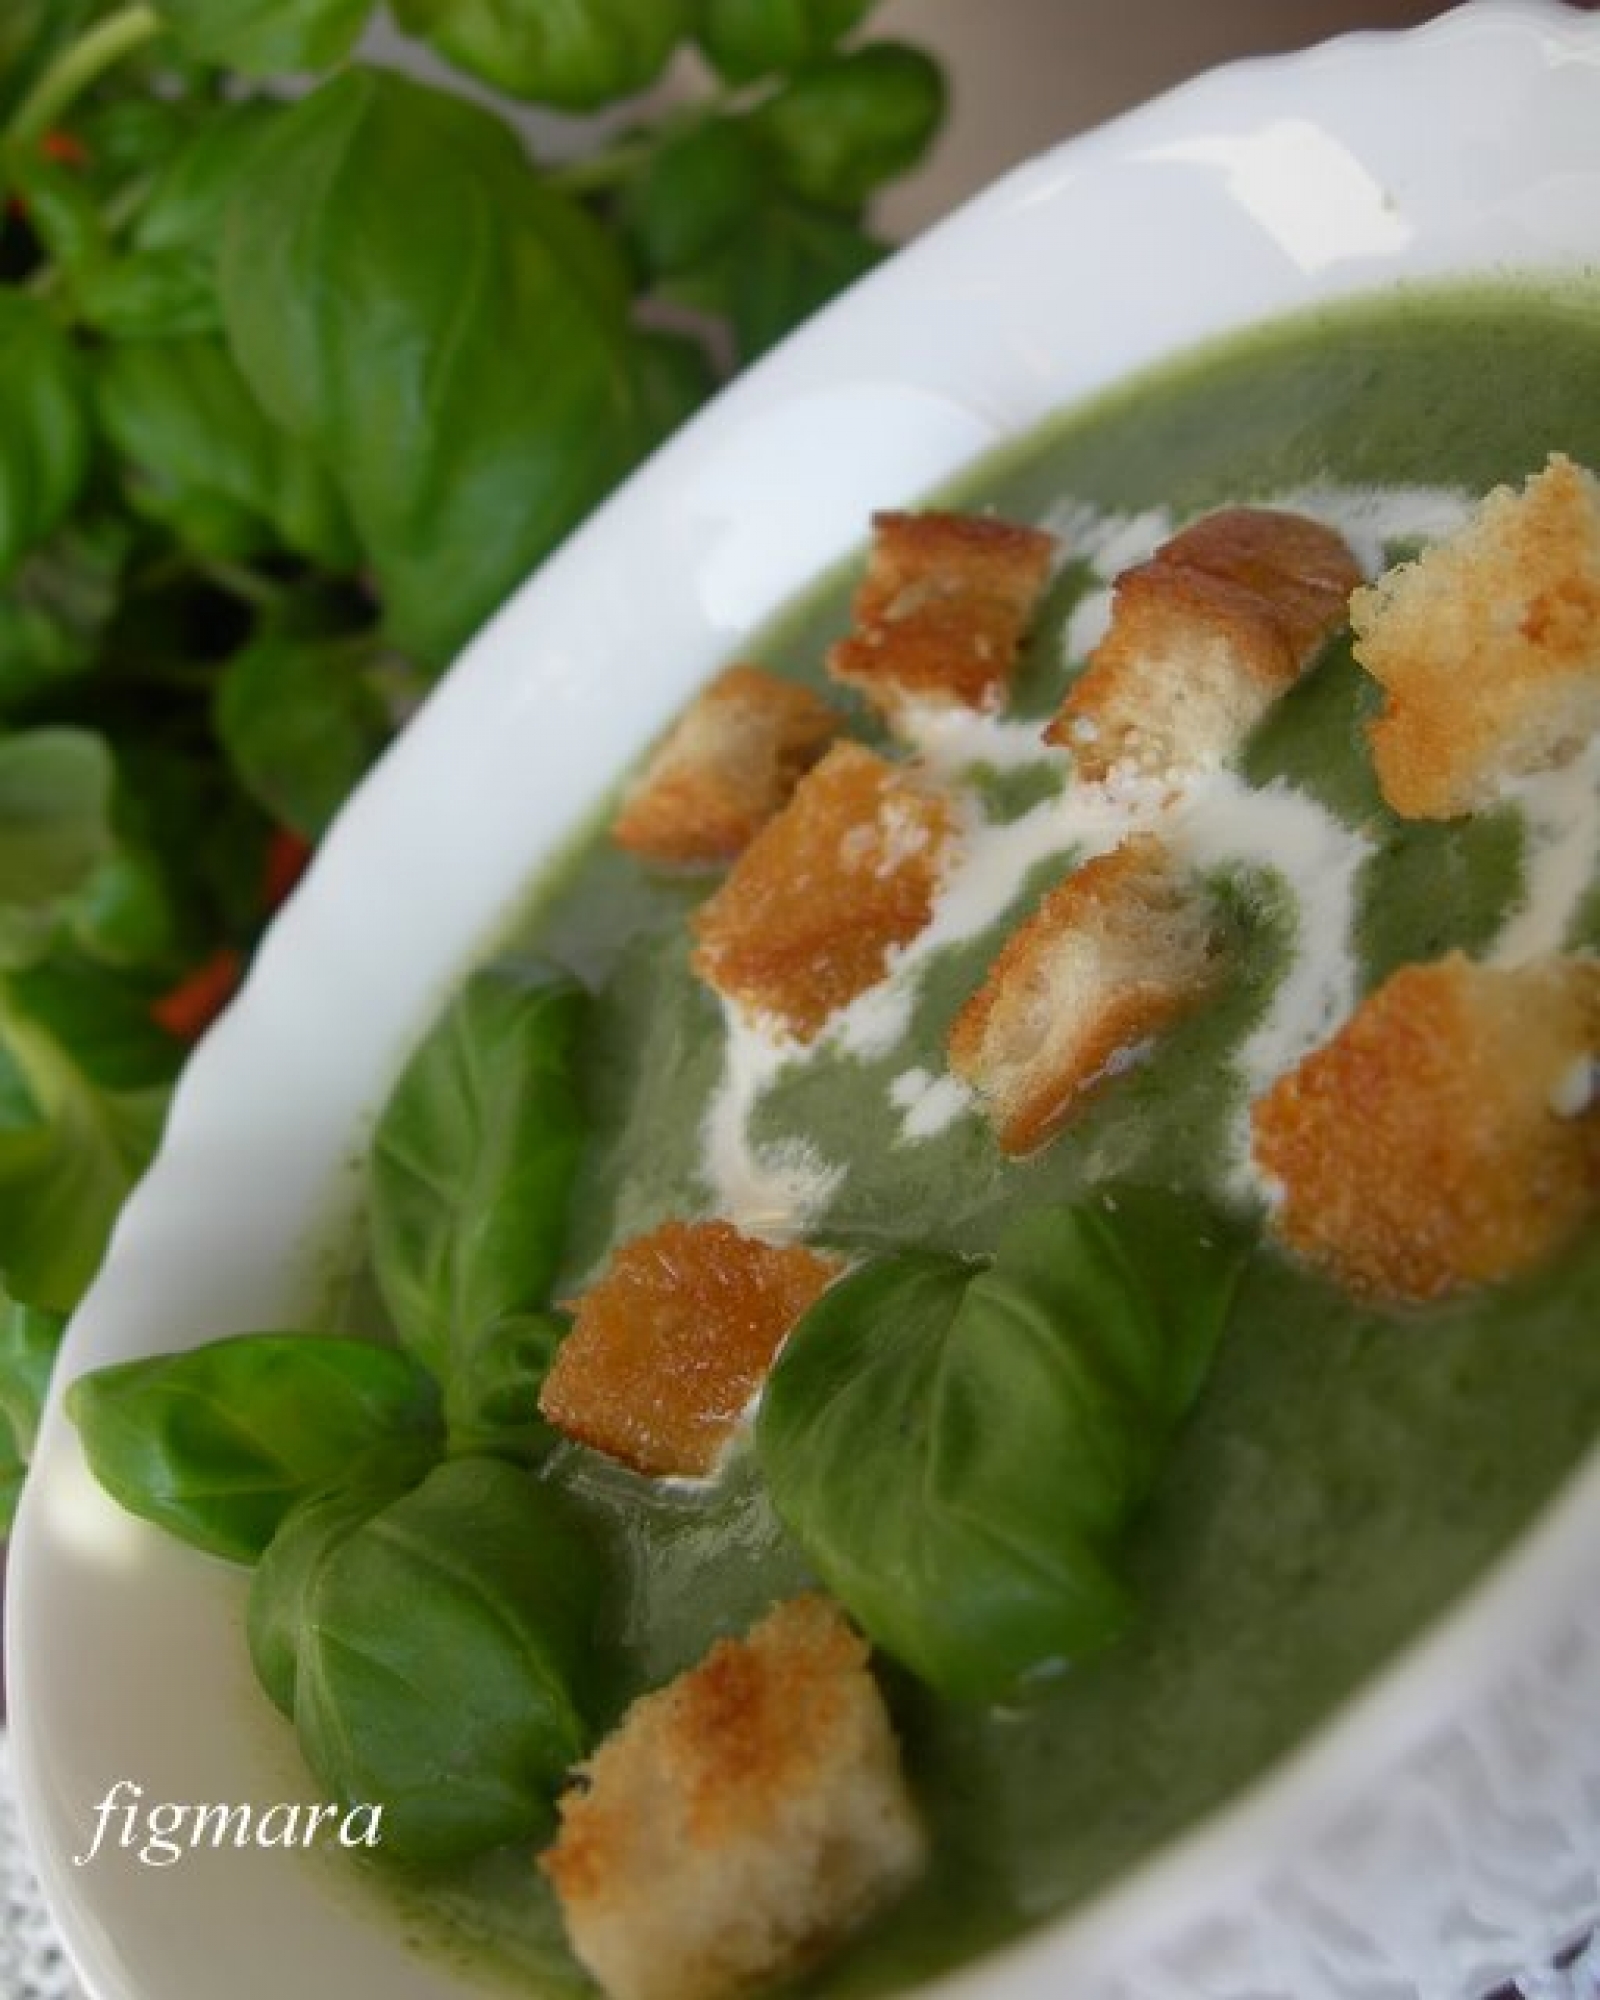 Zielona zupa bazyliowa czyli tęsknota za wiosną